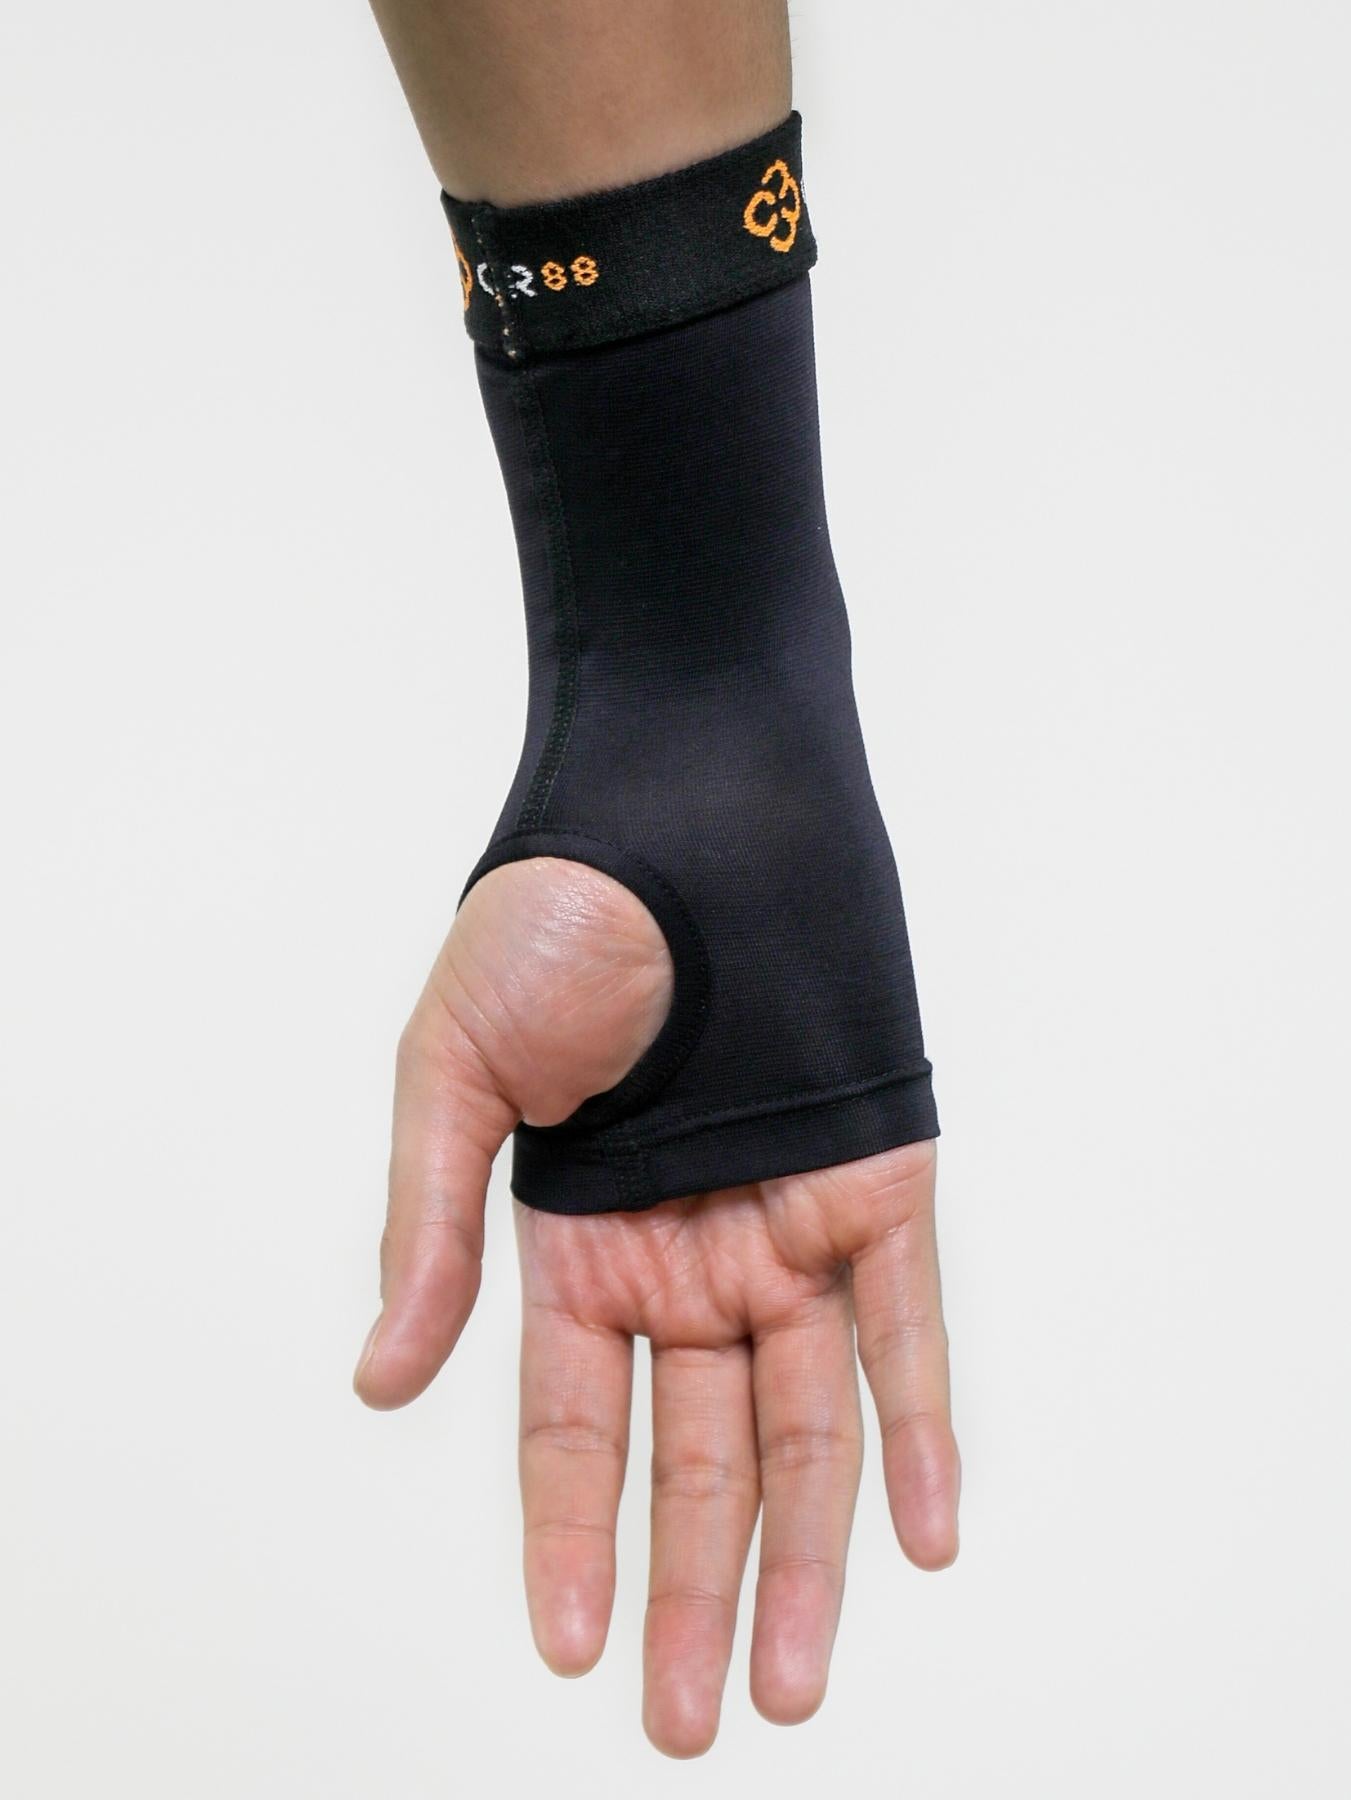 Tommie Copper® Wrist Brace, All-Day Wear